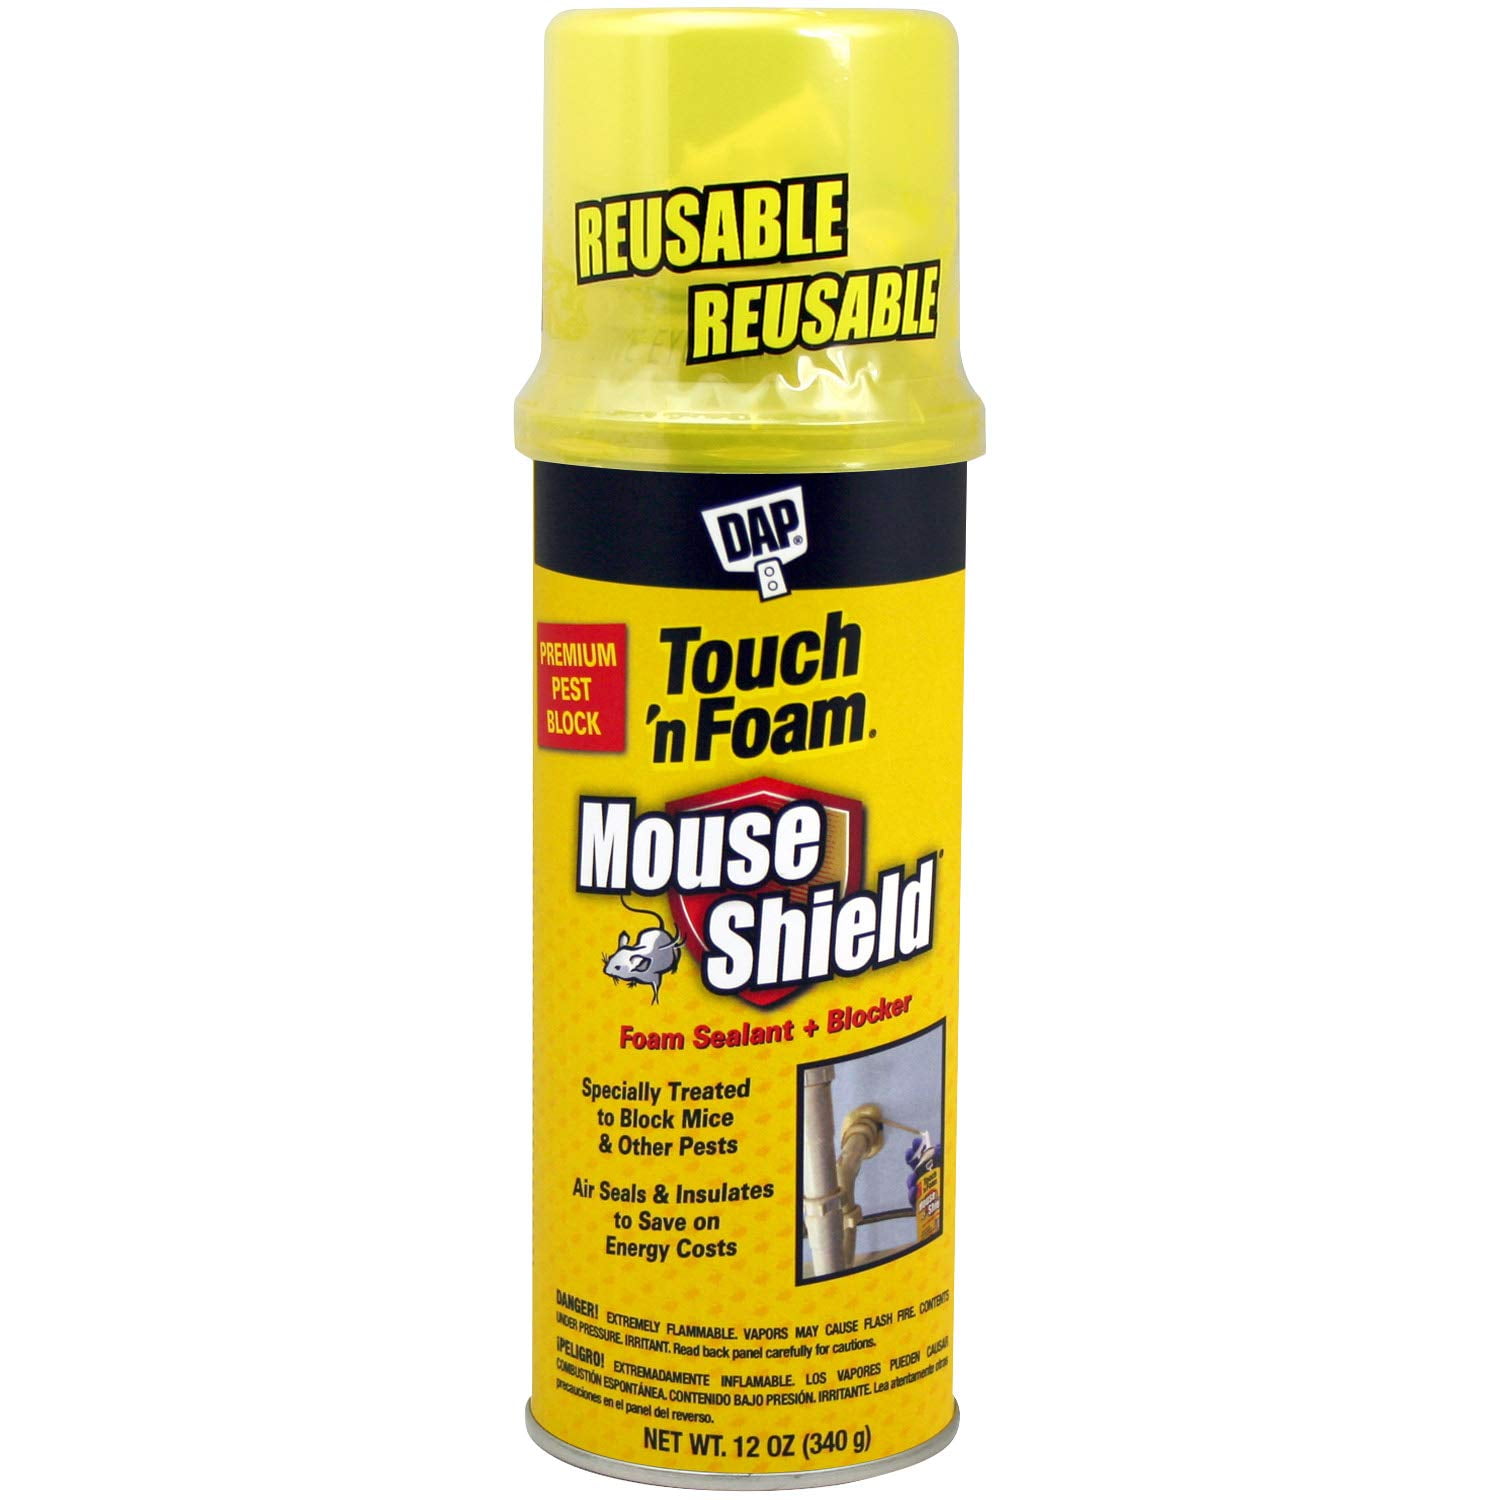 Touch 'n Foam Mouse Shield 12-oz. Pest Block Foam Sealant